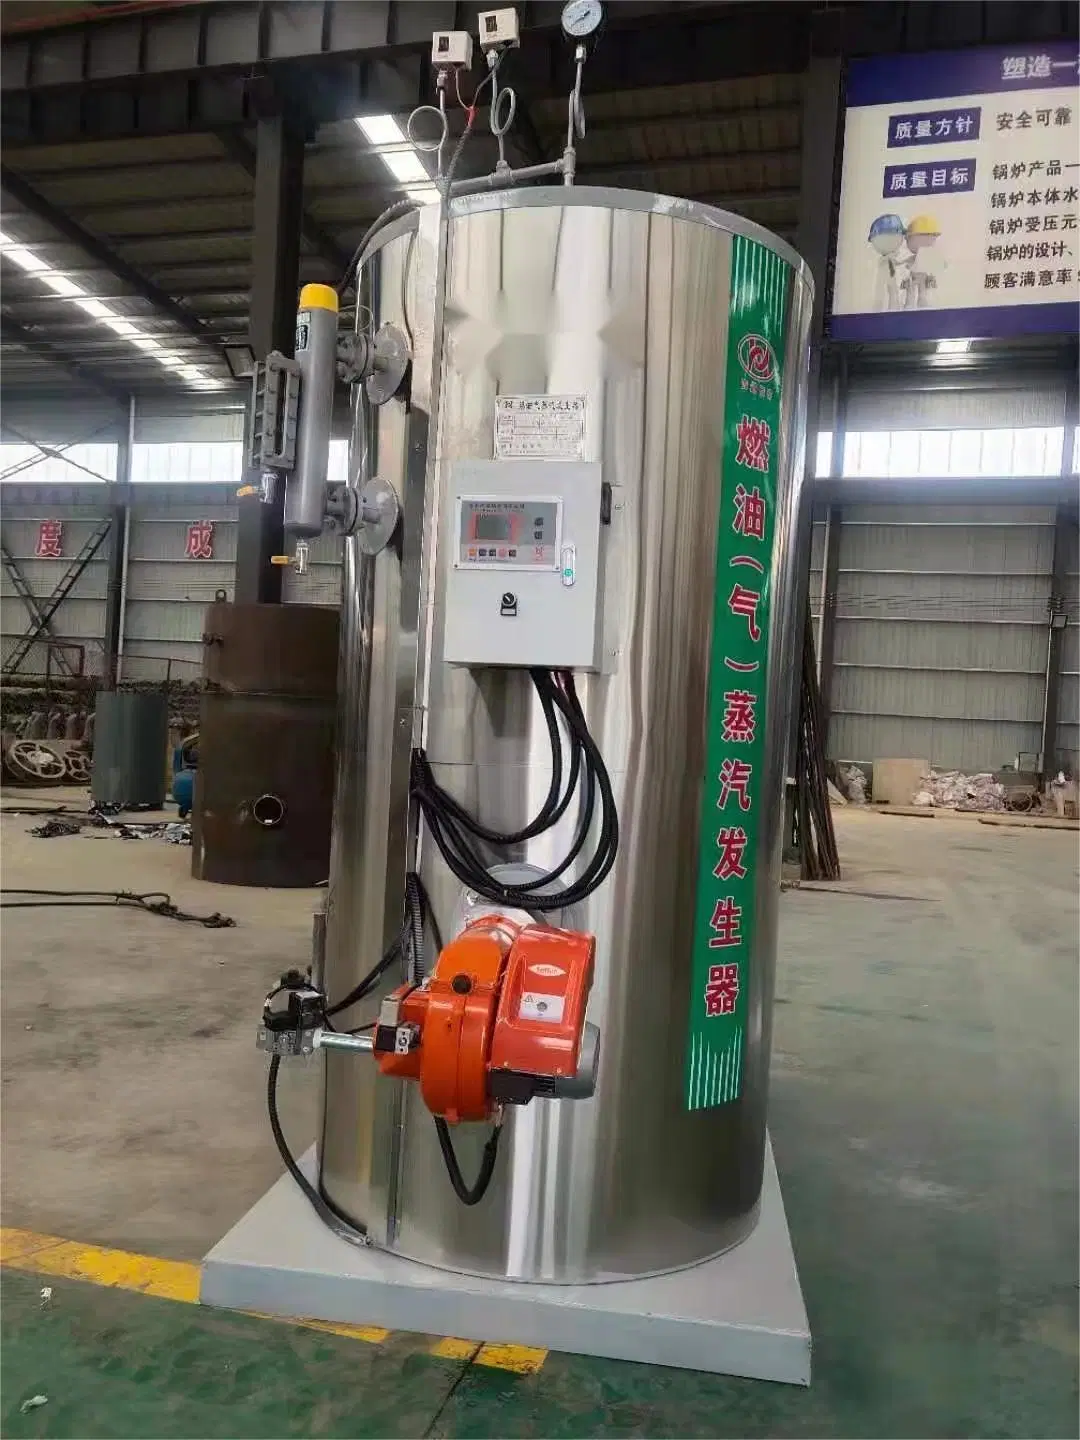 Usine chinoise fournissant une faible consommation d'énergie Lss Industrie Plant Gaz alimenté Huile/Gaz Générateur de vapeur Chaudière à vapeur pour SPA.